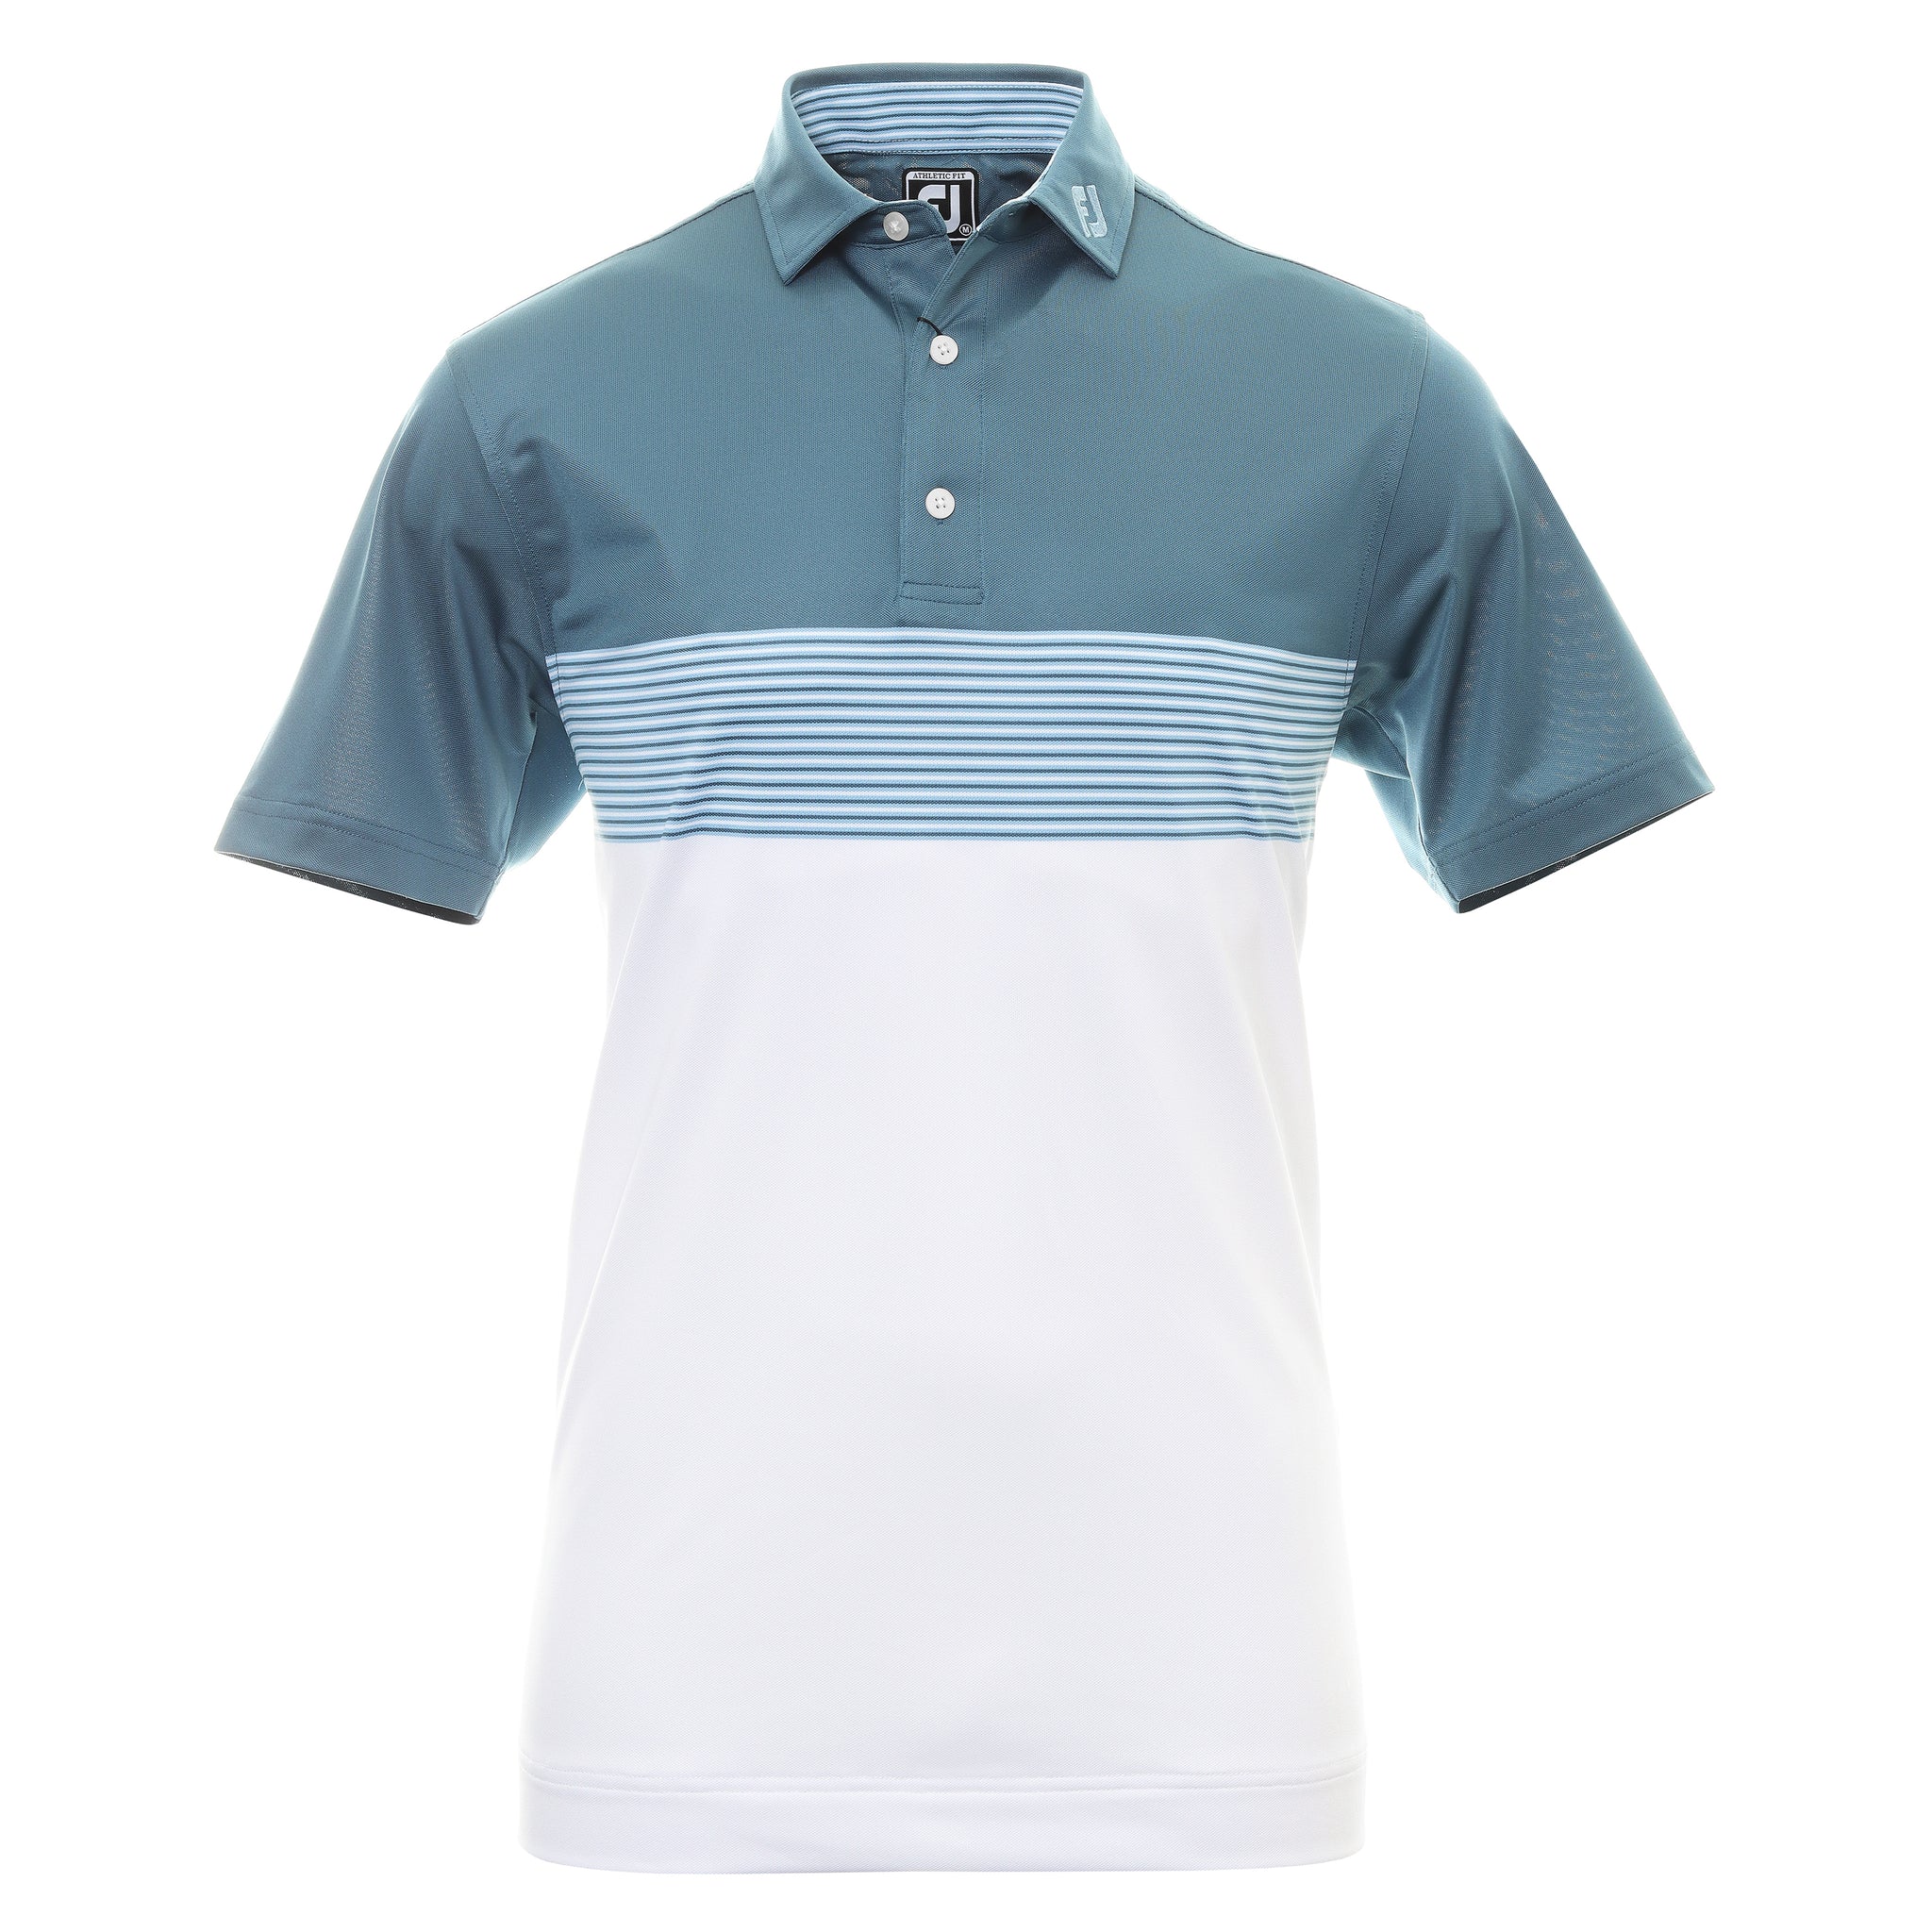 FootJoy Colour Block Pique Golf Shirt 88421 Ink White Dusk Blue ...